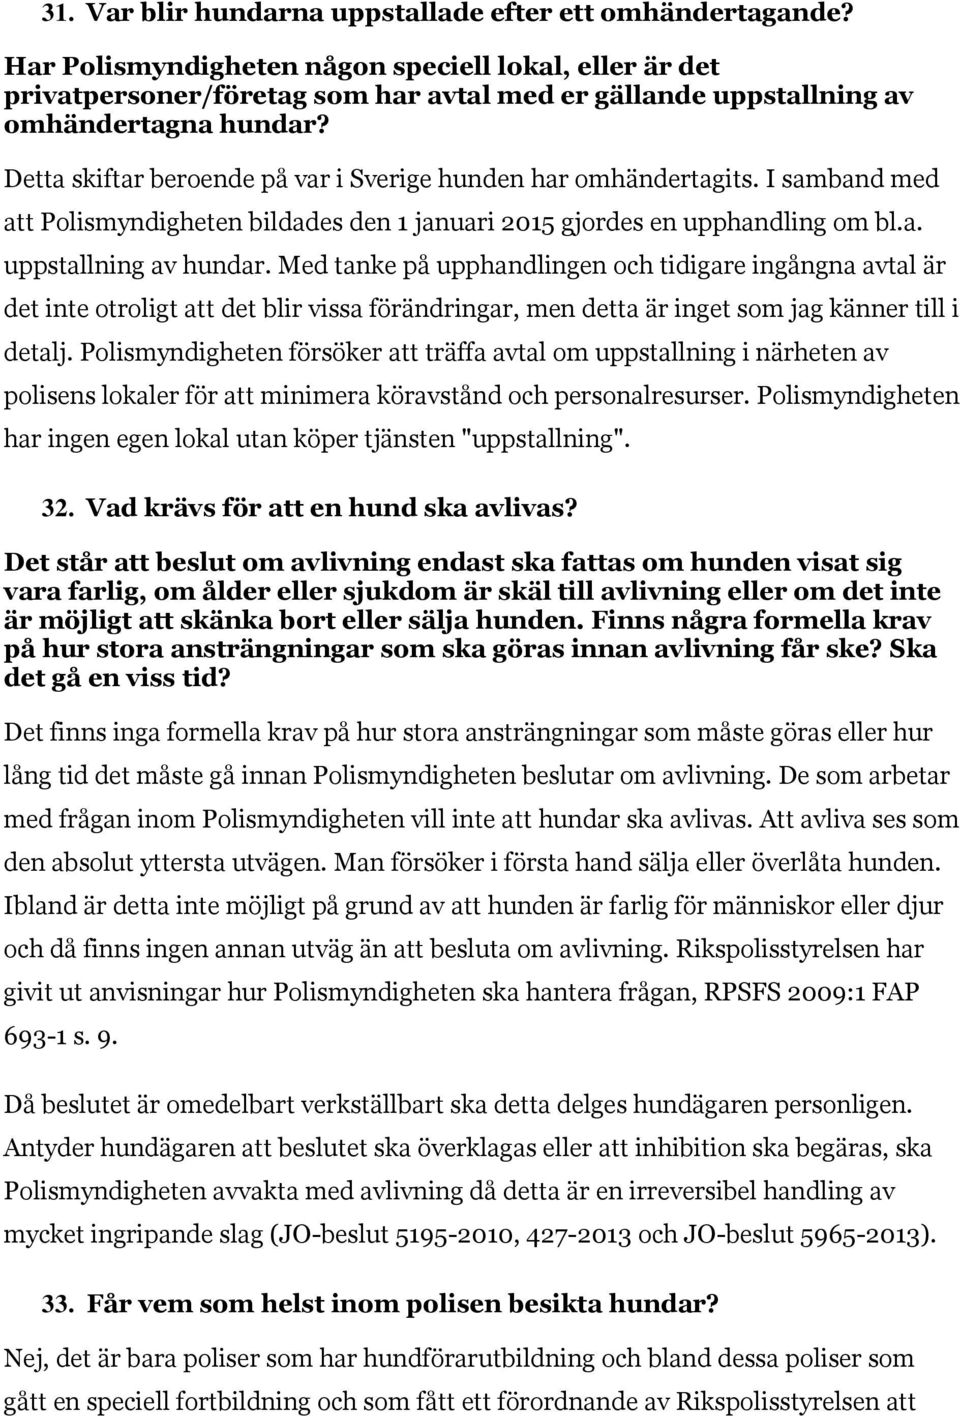 Detta skiftar beroende på var i Sverige hunden har omhändertagits. I samband med att Polismyndigheten bildades den 1 januari 2015 gjordes en upphandling om bl.a. uppstallning av hundar.